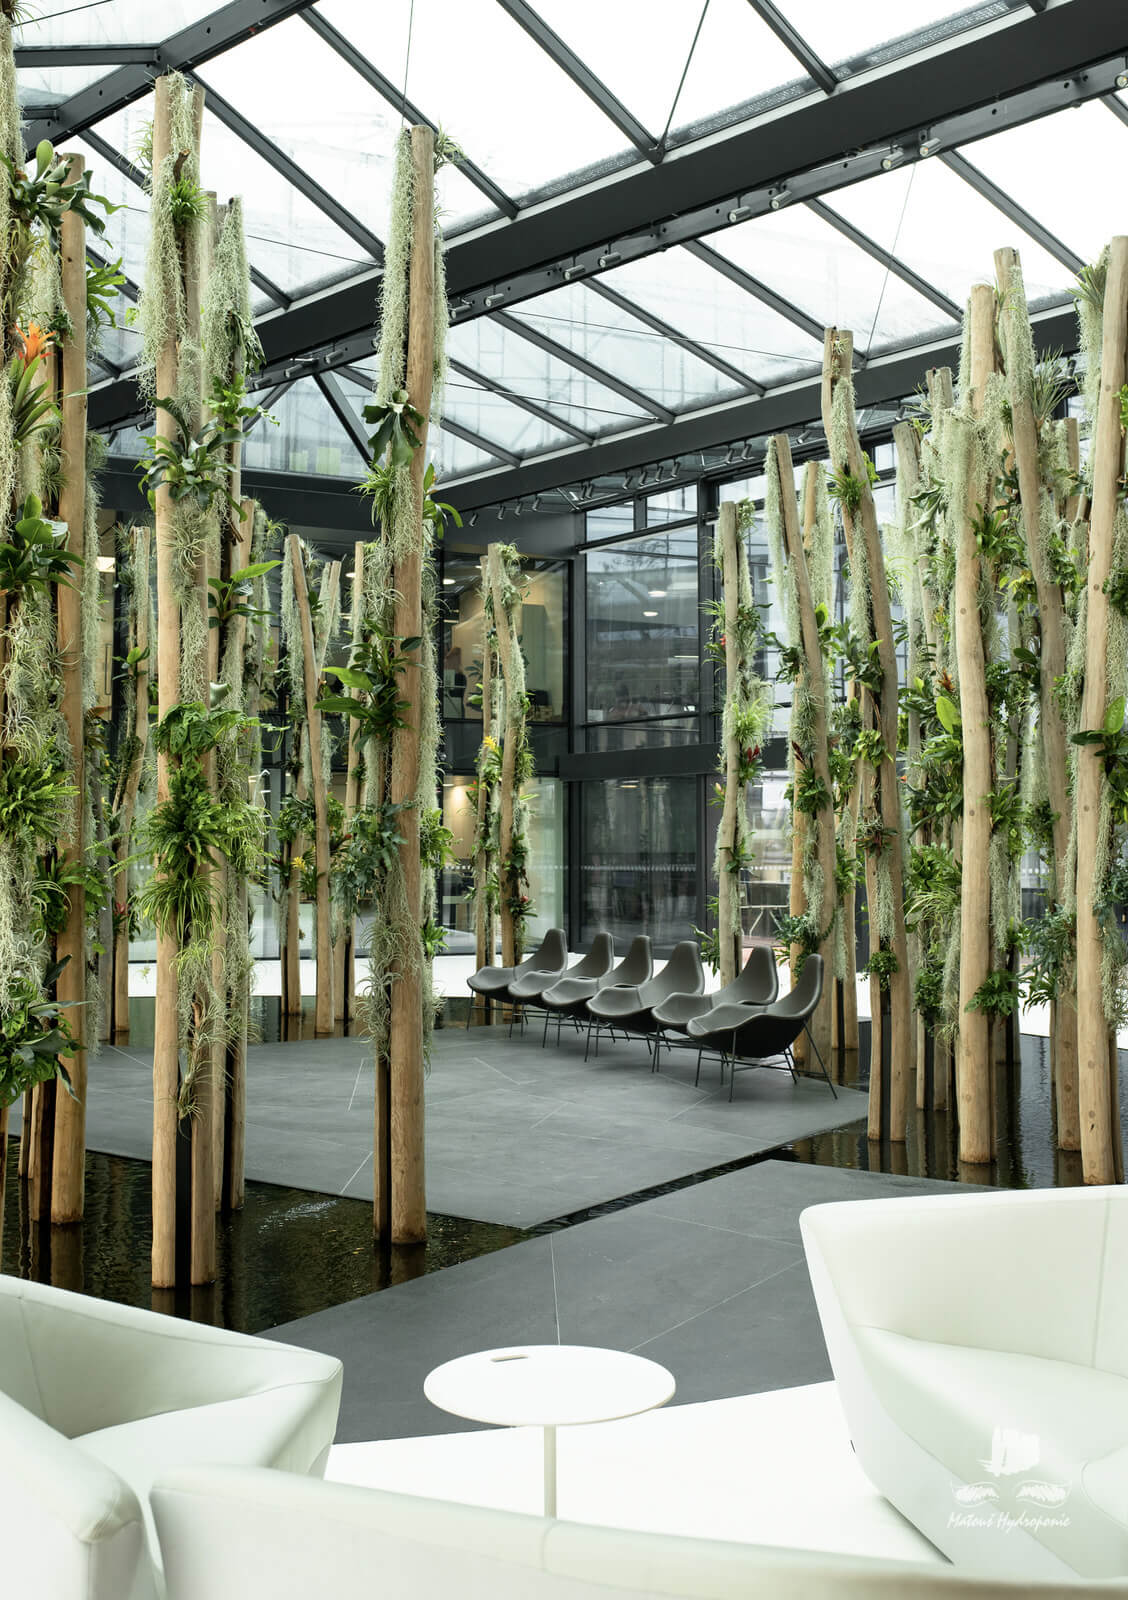 interiér čekárny se vztyčenými dřevinami a hydroponickými rostlinami